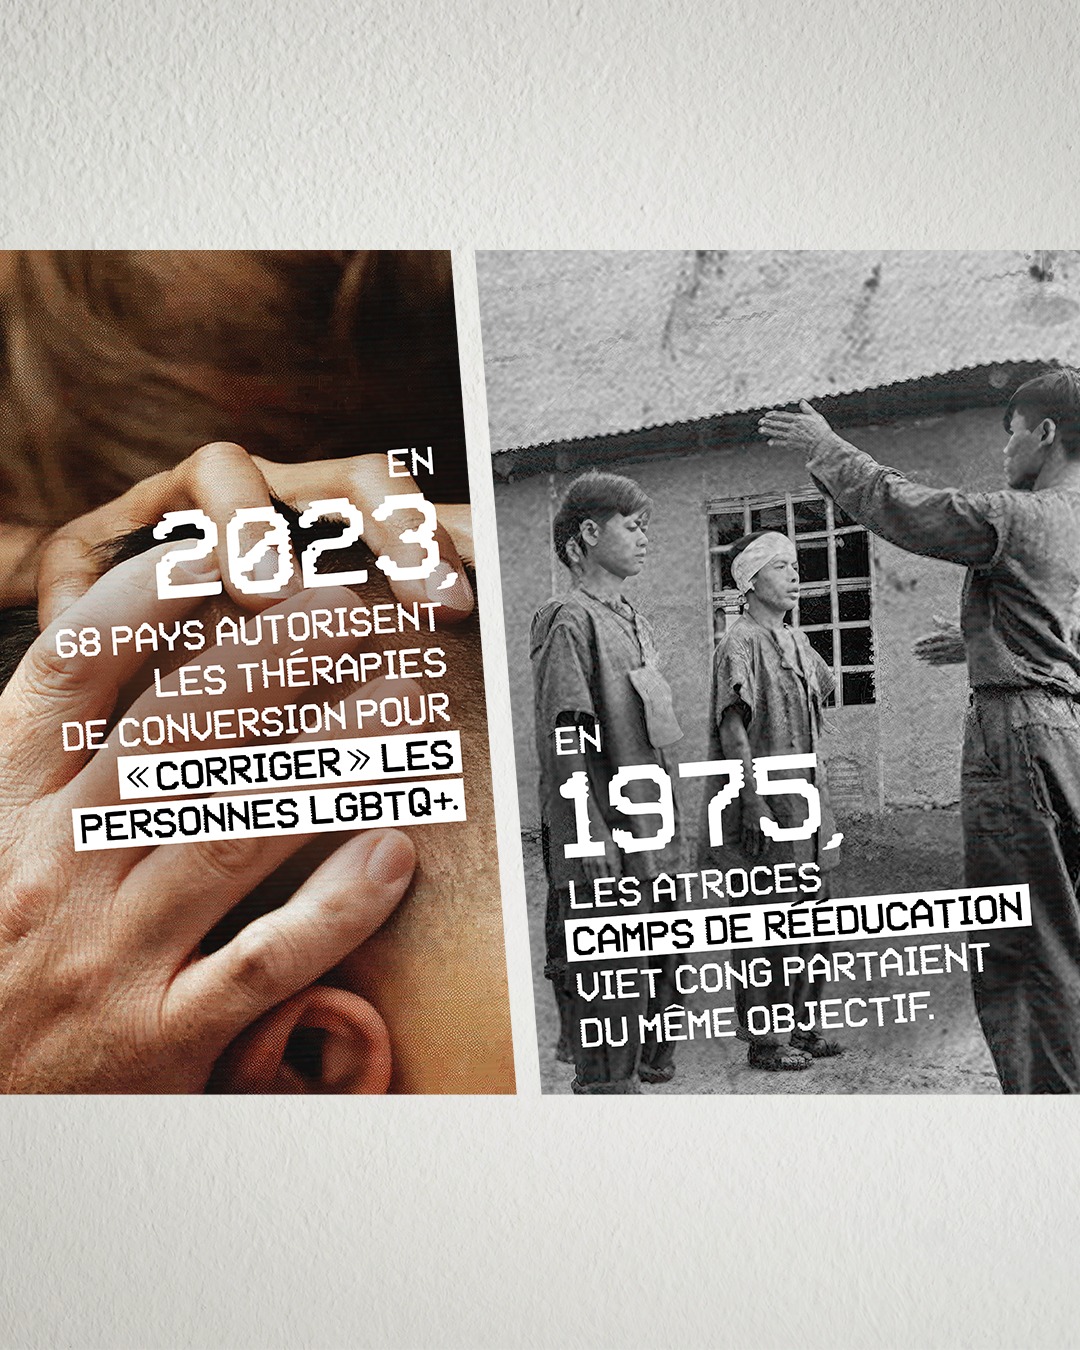 Affiche nationale de la campagne de la Fondation Émergence. On y voit deux images, une qui dit qu'en 2023, 68 pays autorisent les thérapies de conversion pour "corriger" les personnes LGBTQ+. La deuxième dit : en 1975, les atroces camps de rééducation viet cong partaient du même objectif.